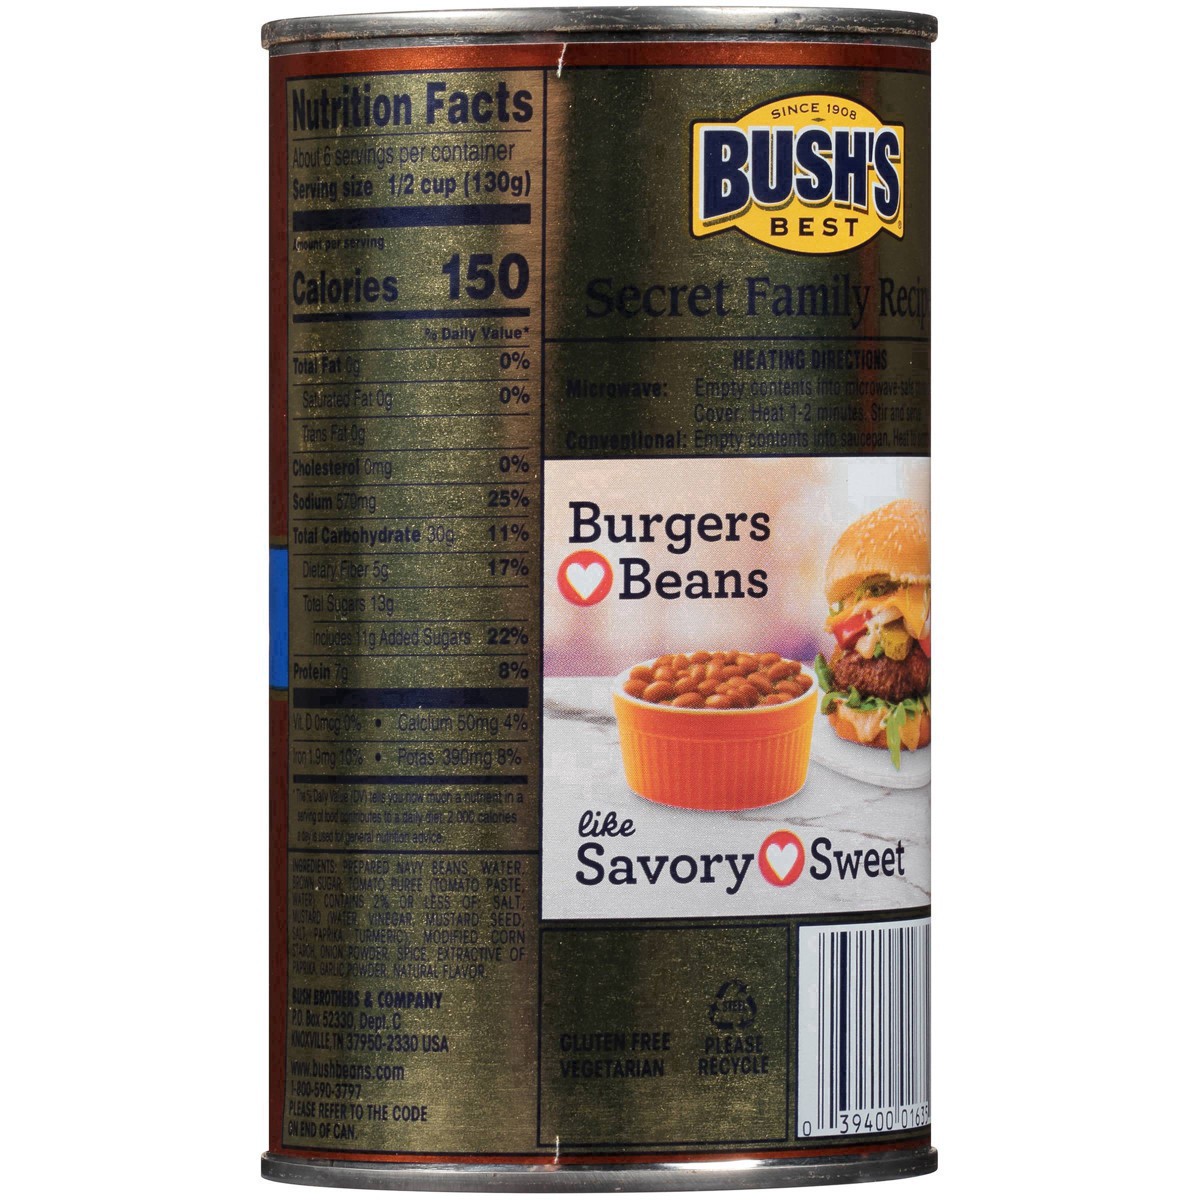 slide 15 of 75, Bush's Best Vegetarian Baked Beans, 28 oz